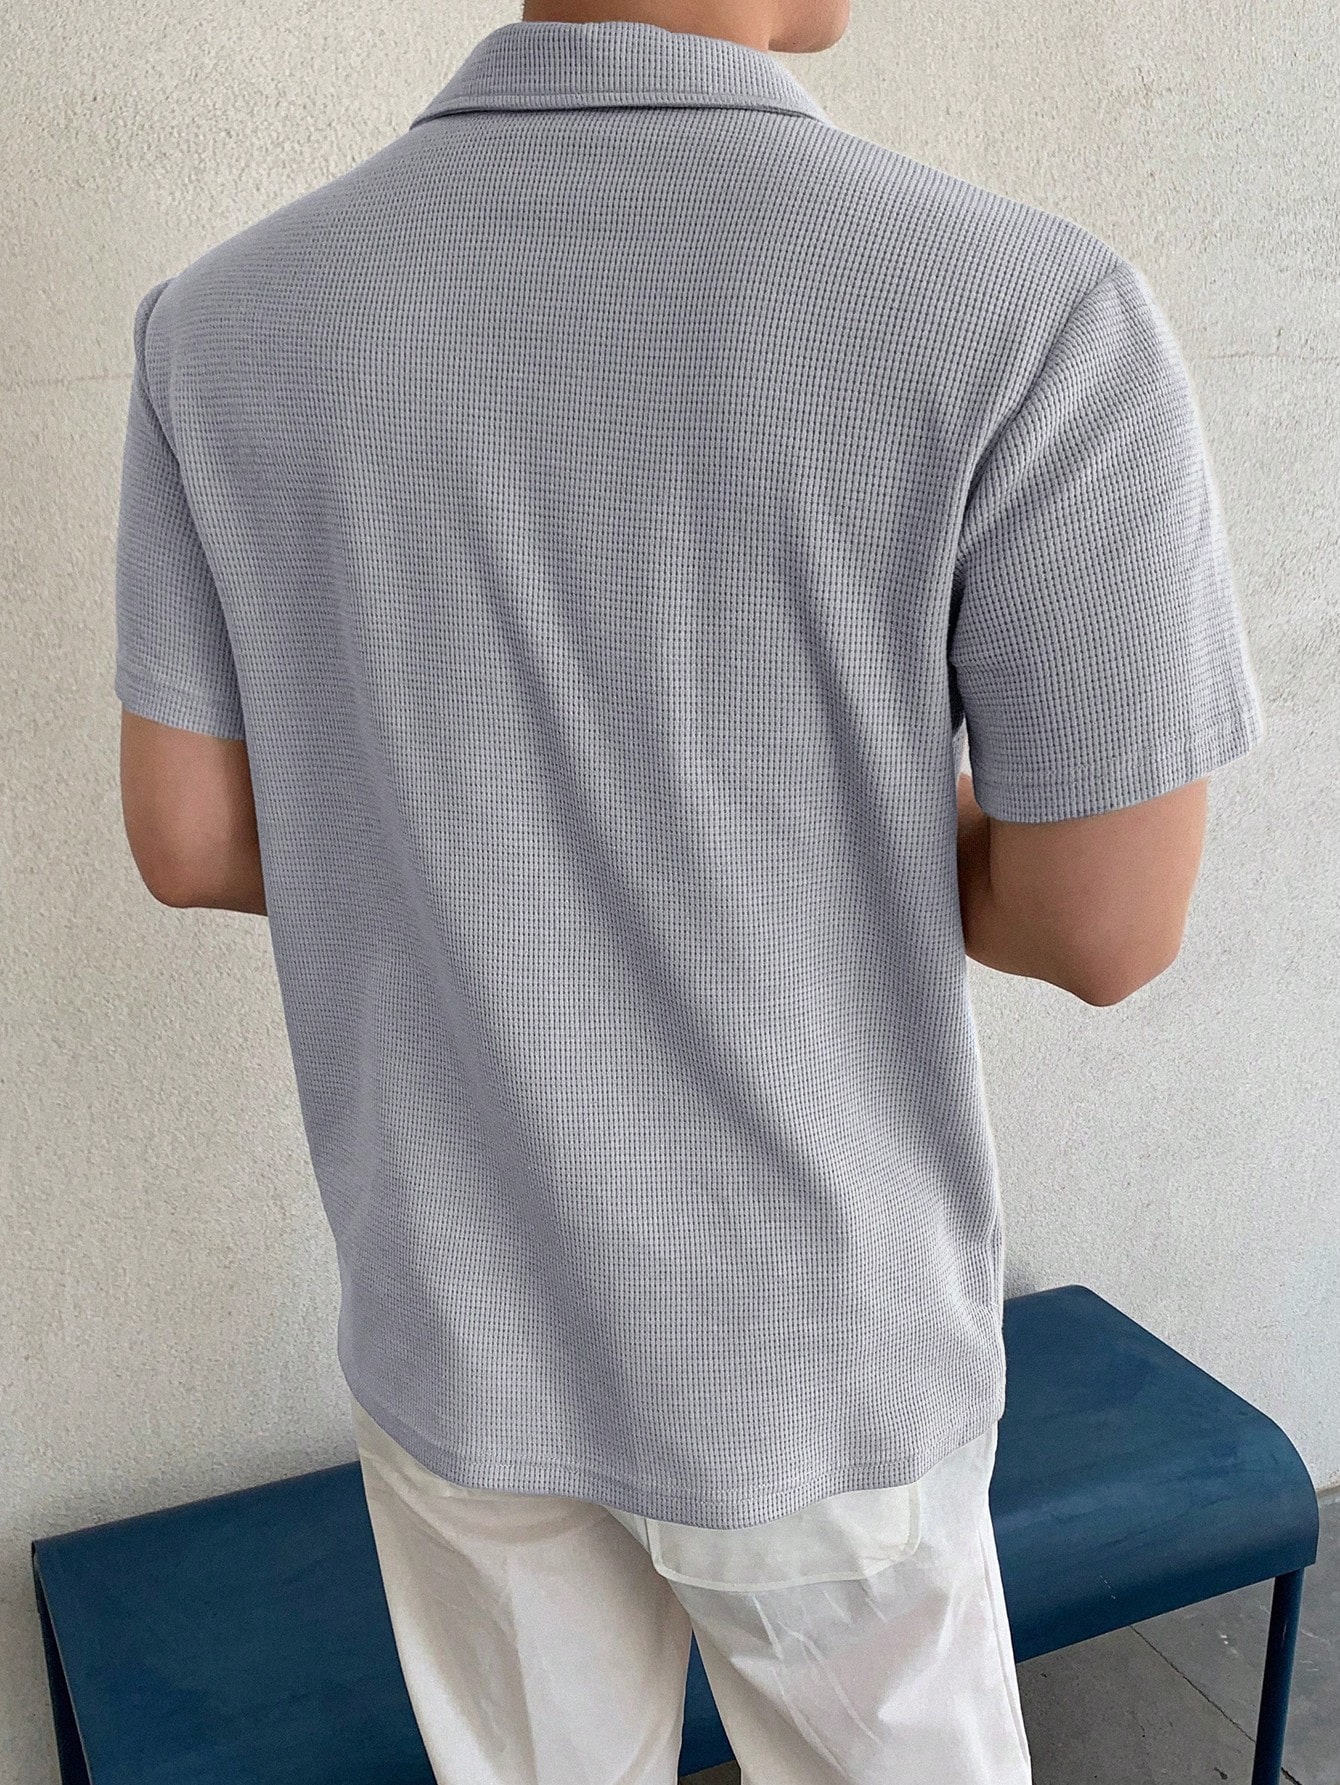 DAZY Мужская однотонная рубашка поло с коротким рукавом на лето, светло-серый 12storeez рубашка с карманами однотонная белая